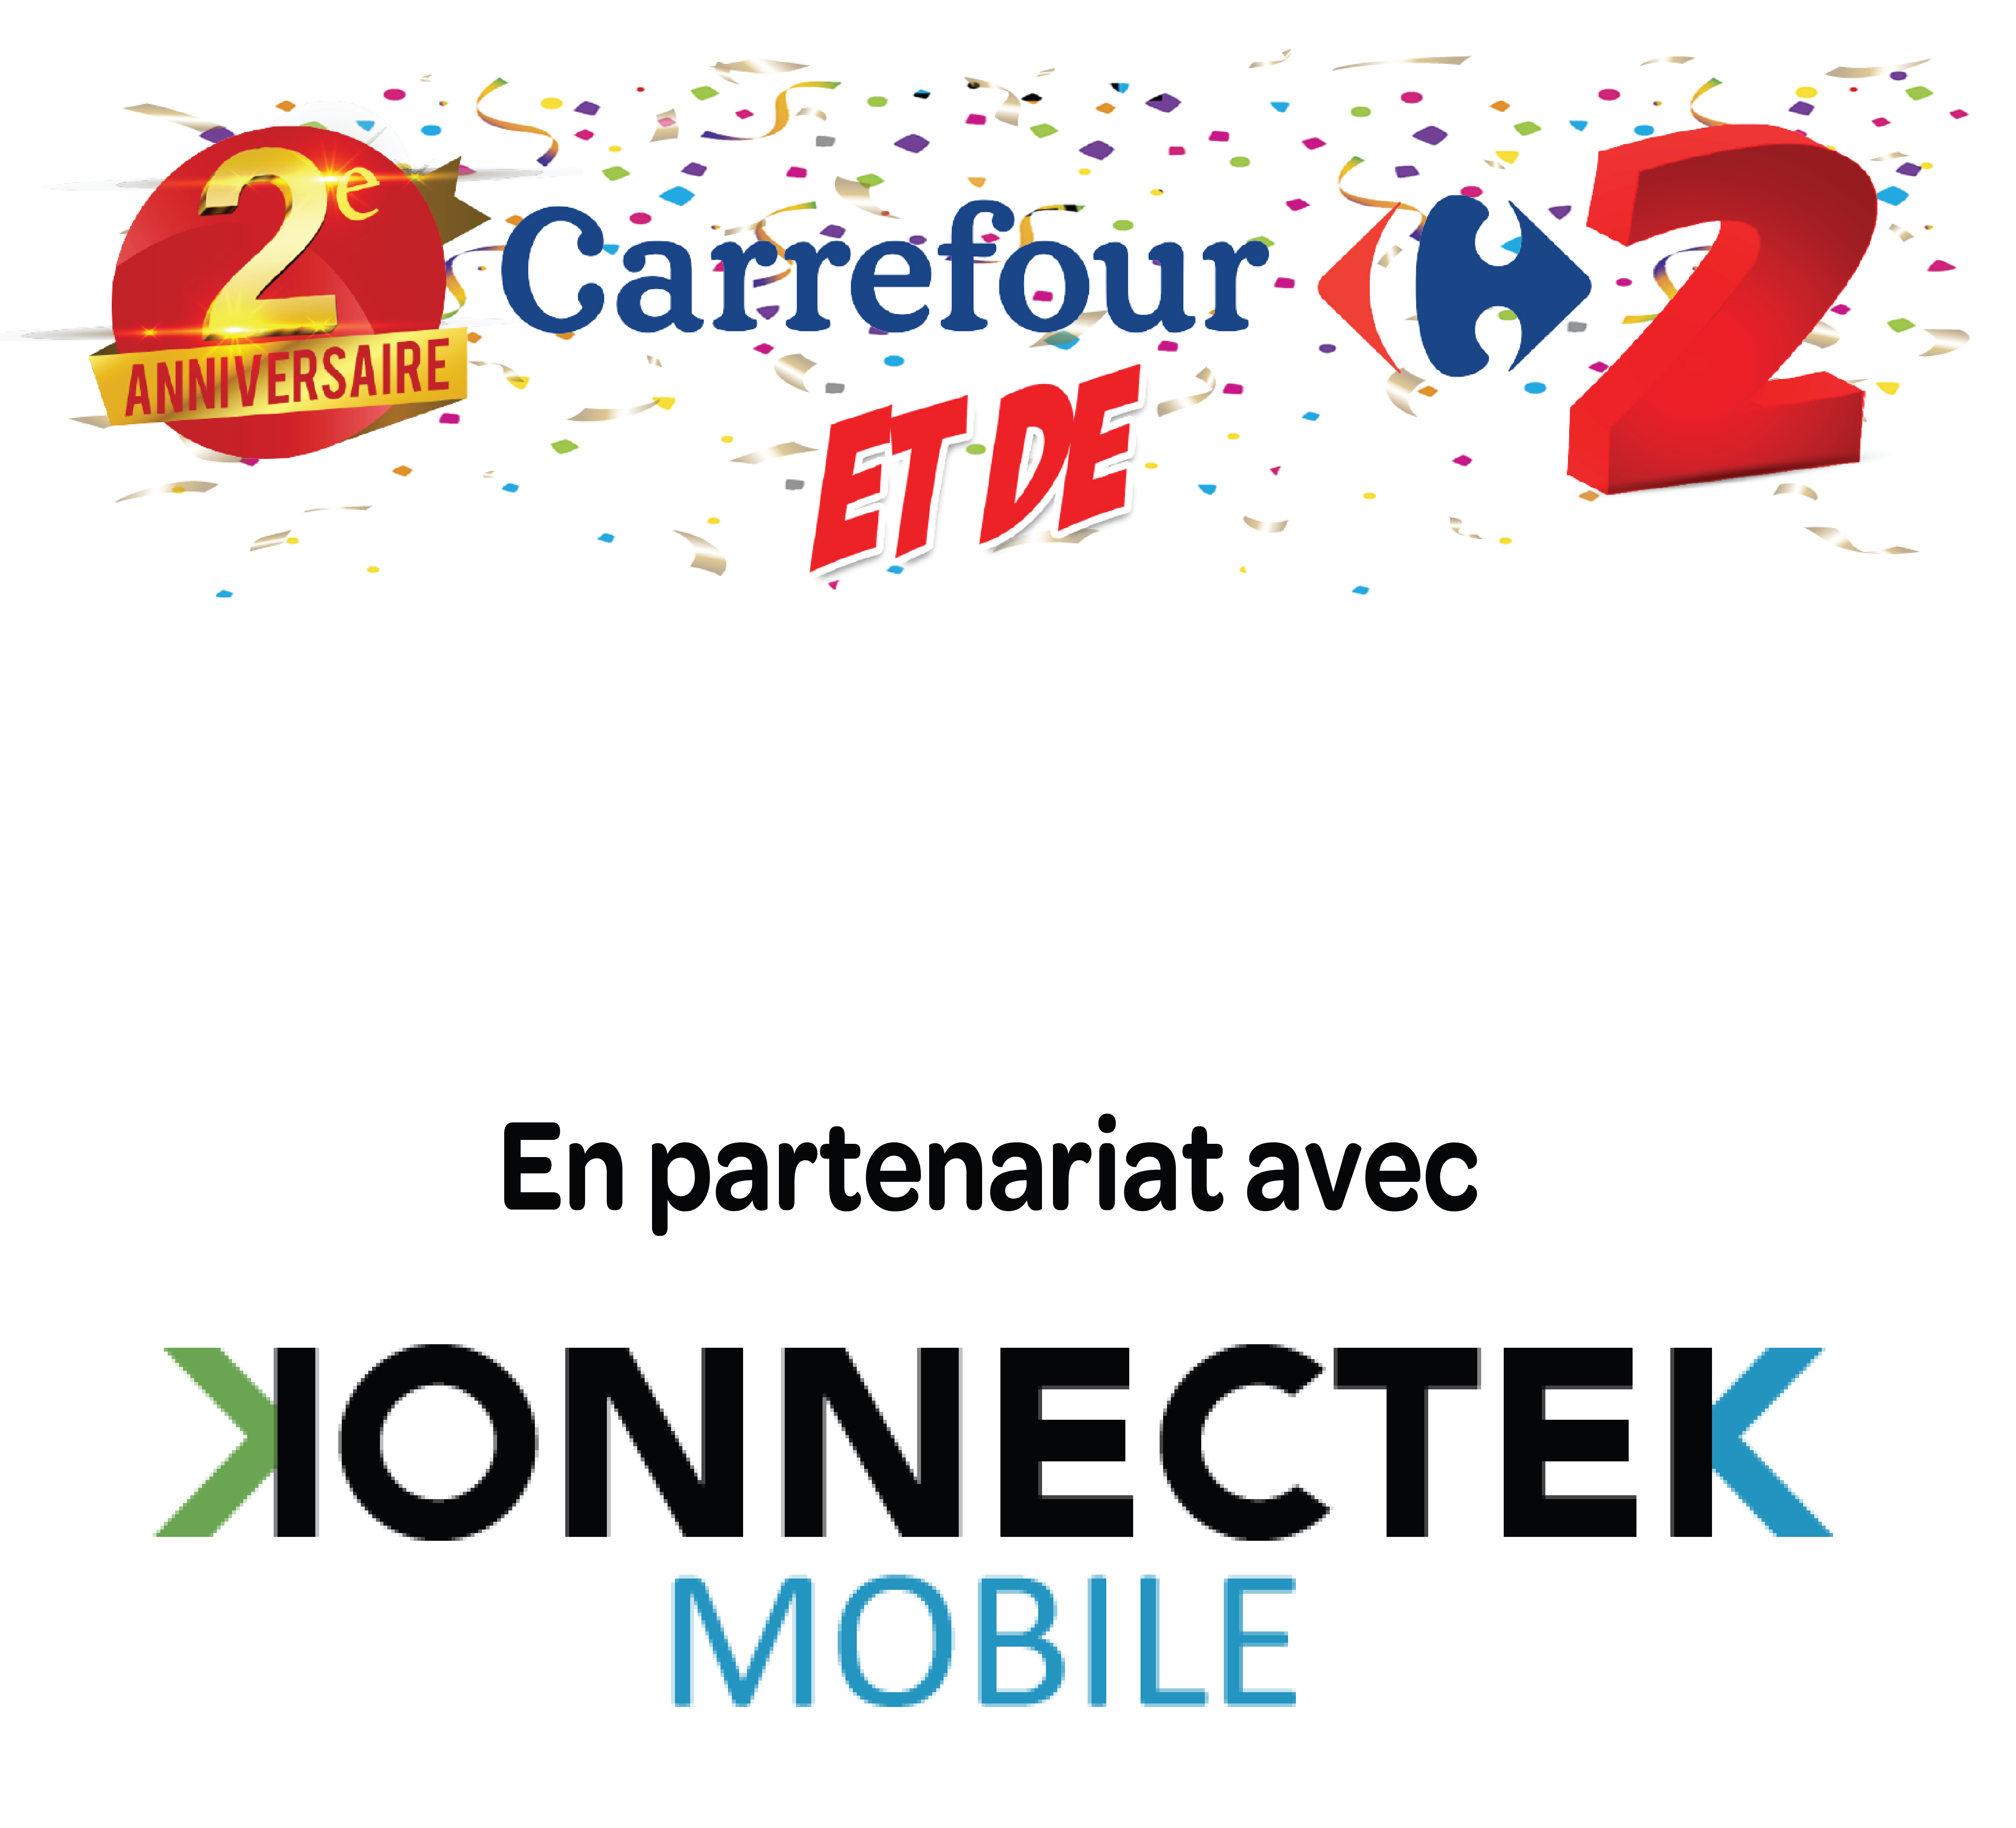 Konektek Mobile partenaire de Carrefour